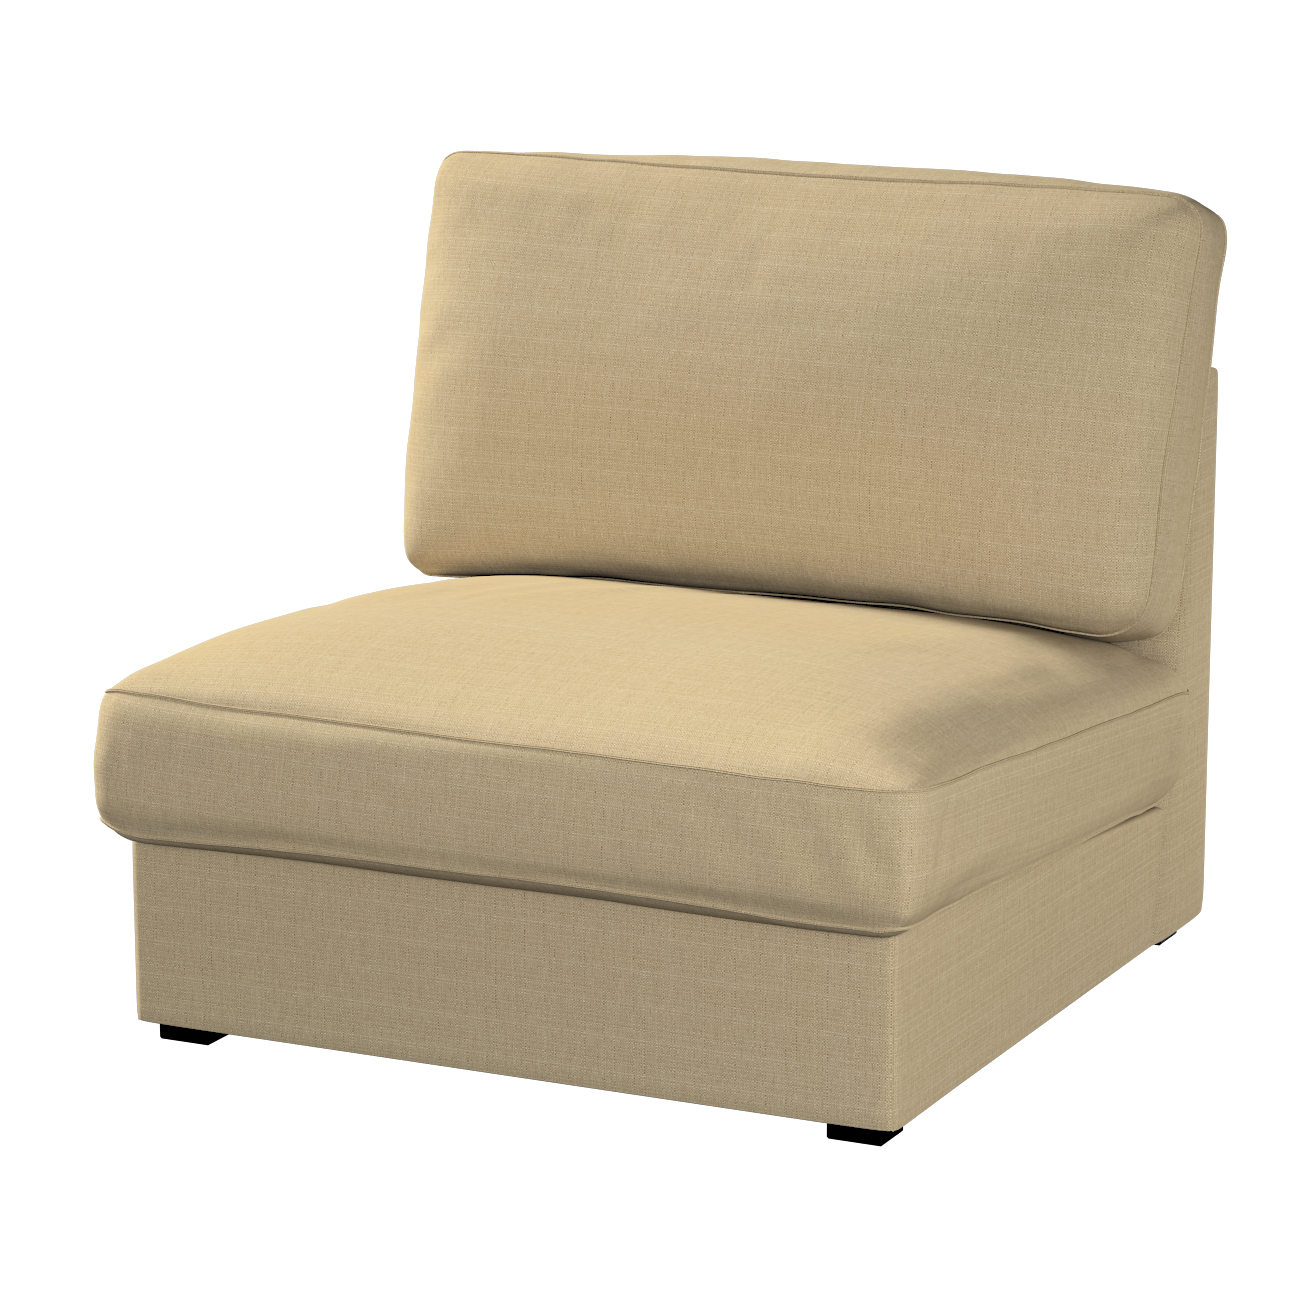 Bezug für Kivik Sessel nicht ausklappbar, dunkelbeige, Bezug für Sessel Kiv günstig online kaufen